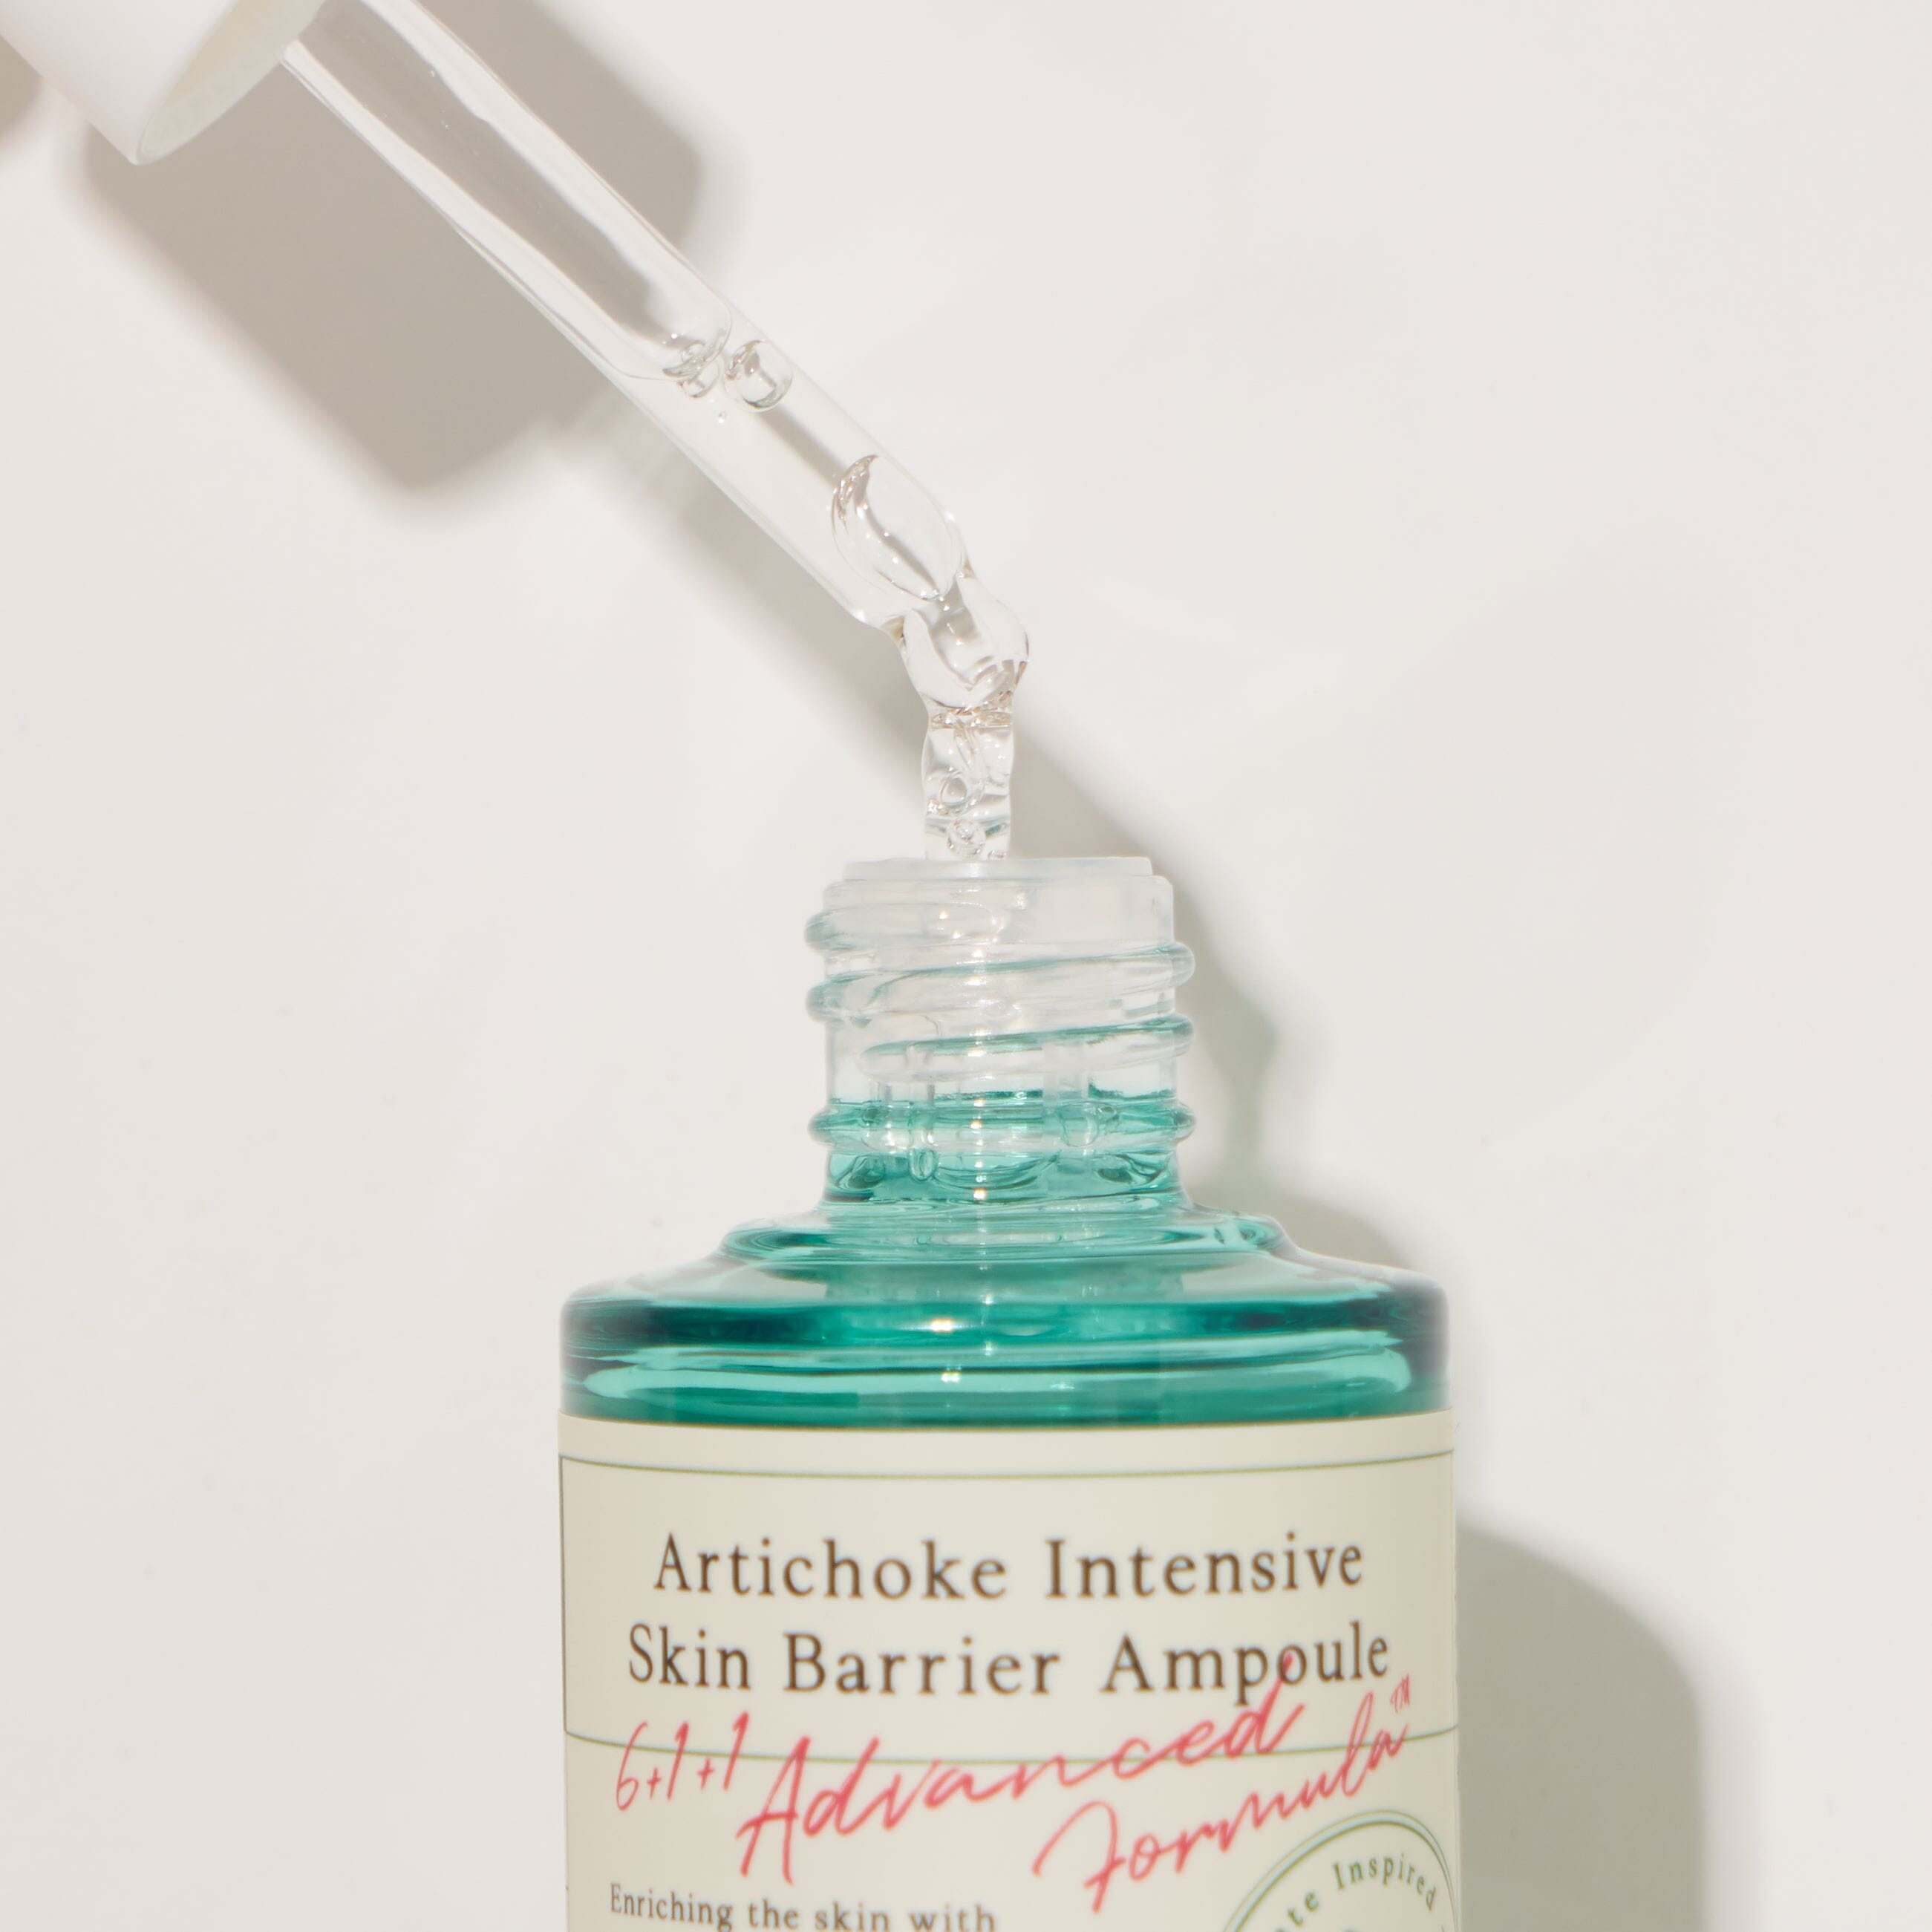 AXIS-Y Artichoke Intensive Skin Barrier Ampoule 30ml Skin Care AXIS-Y ORION XO Sri Lanka